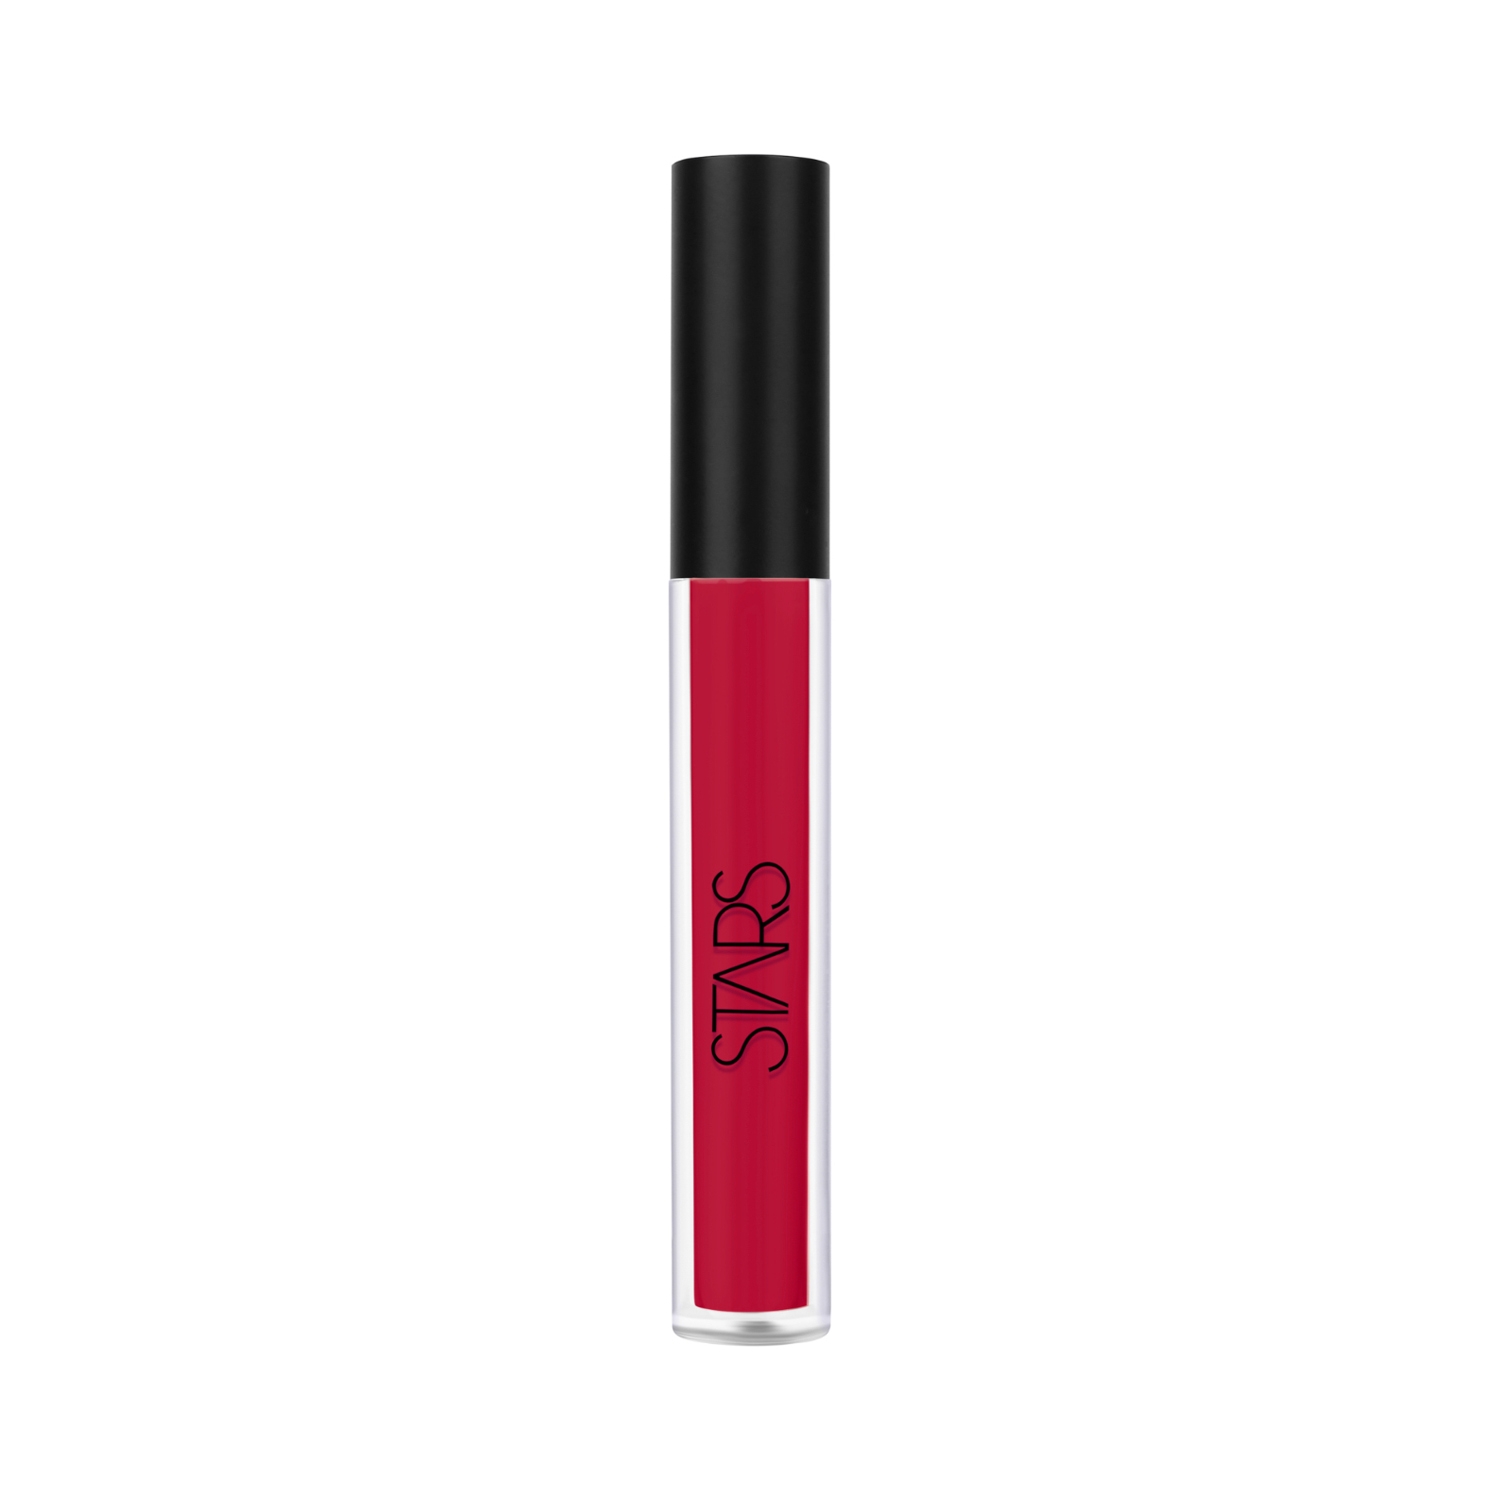 Stars Cosmetics | Stars Cosmetics Lip Pop Matte Finish Liquid Lipstick - 12 Ruby Red (2.6ml)